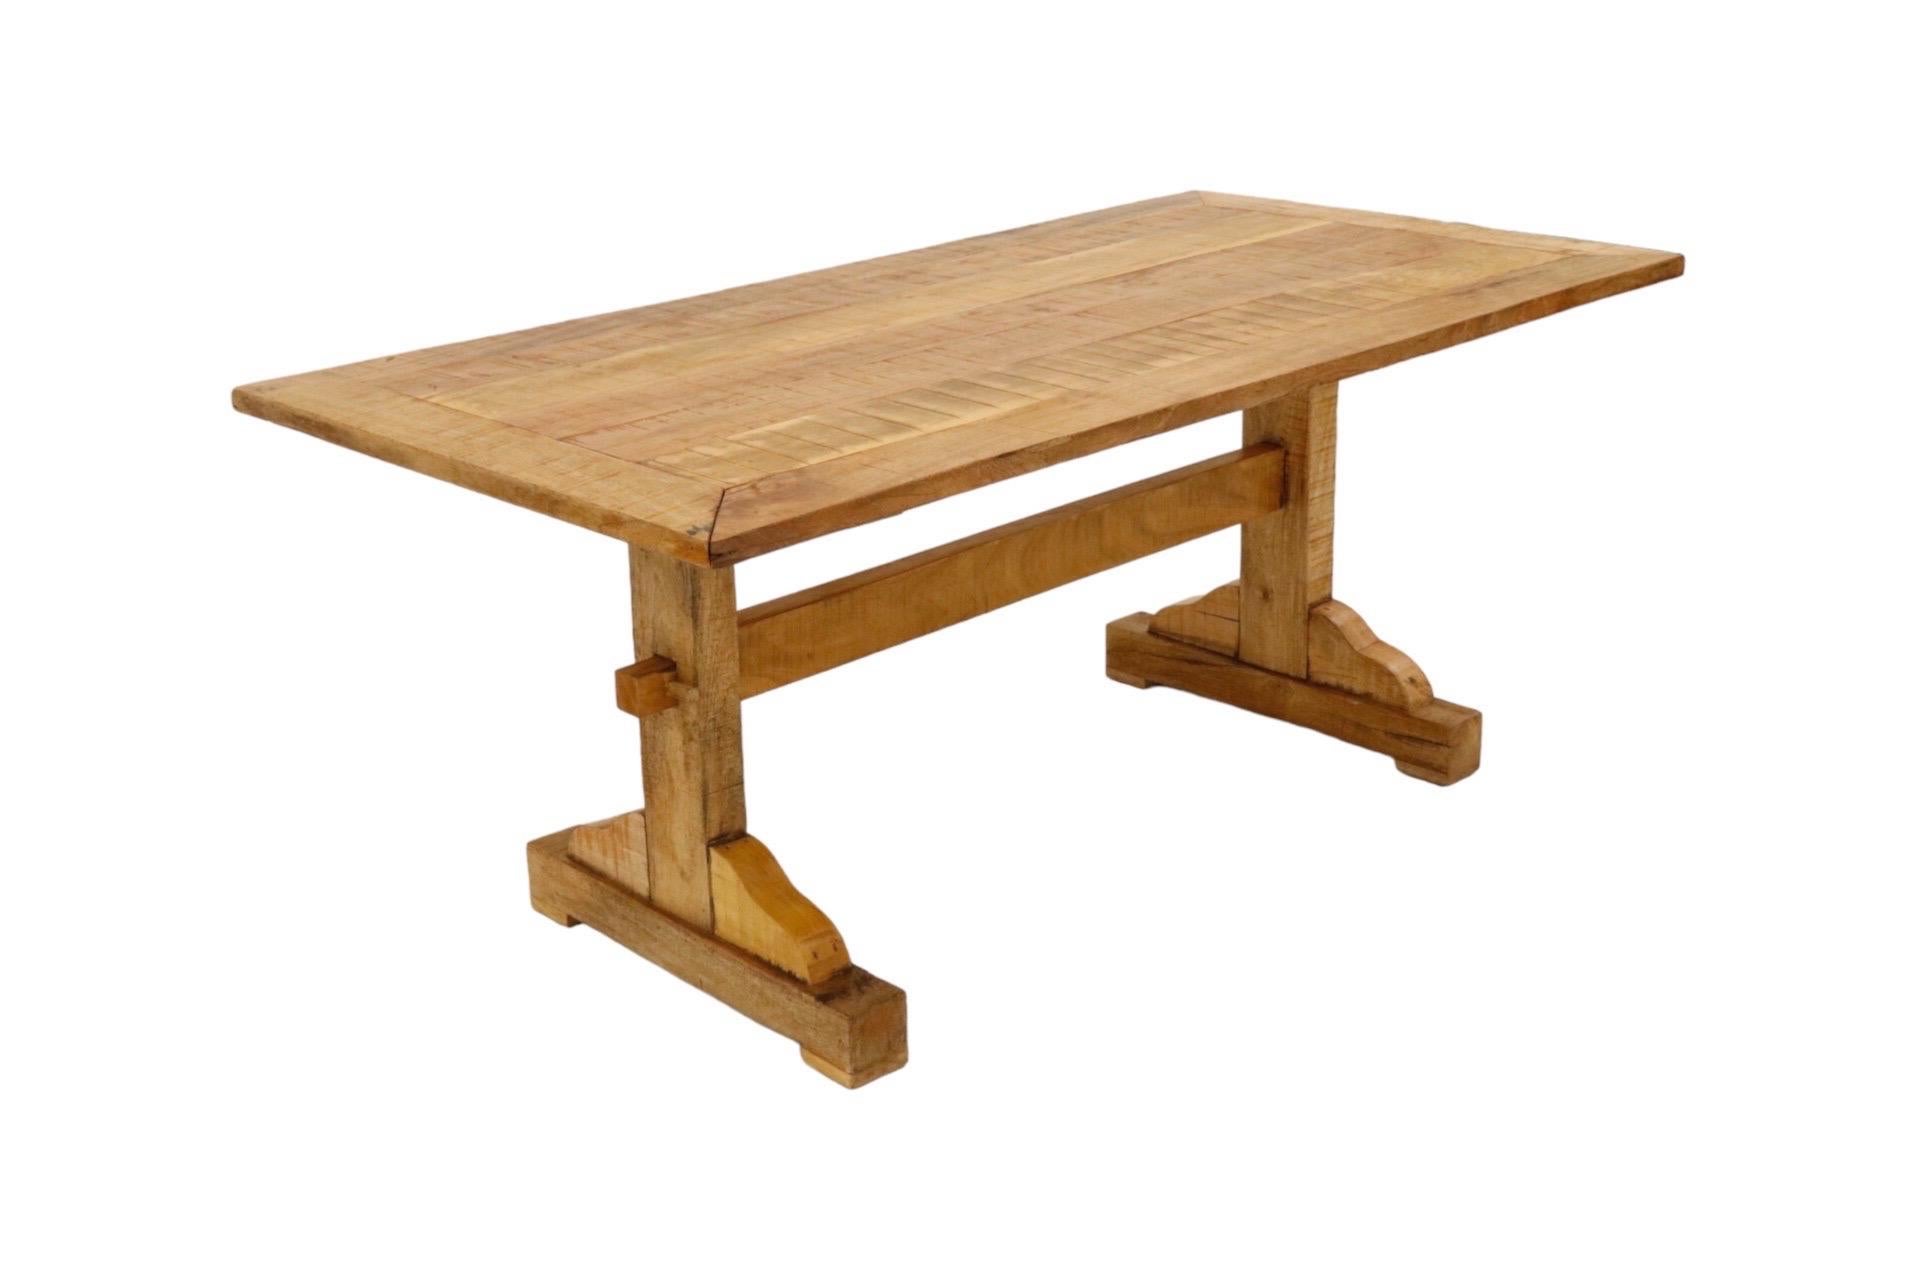 Table de salle à manger à tréteaux en pin, de style fermier. Des planches de bois forment le plateau de la table, encadré d'une large bordure. La base du tréteau est constituée de deux pieds soutenus par une poutre de brancard, verrouillée par des